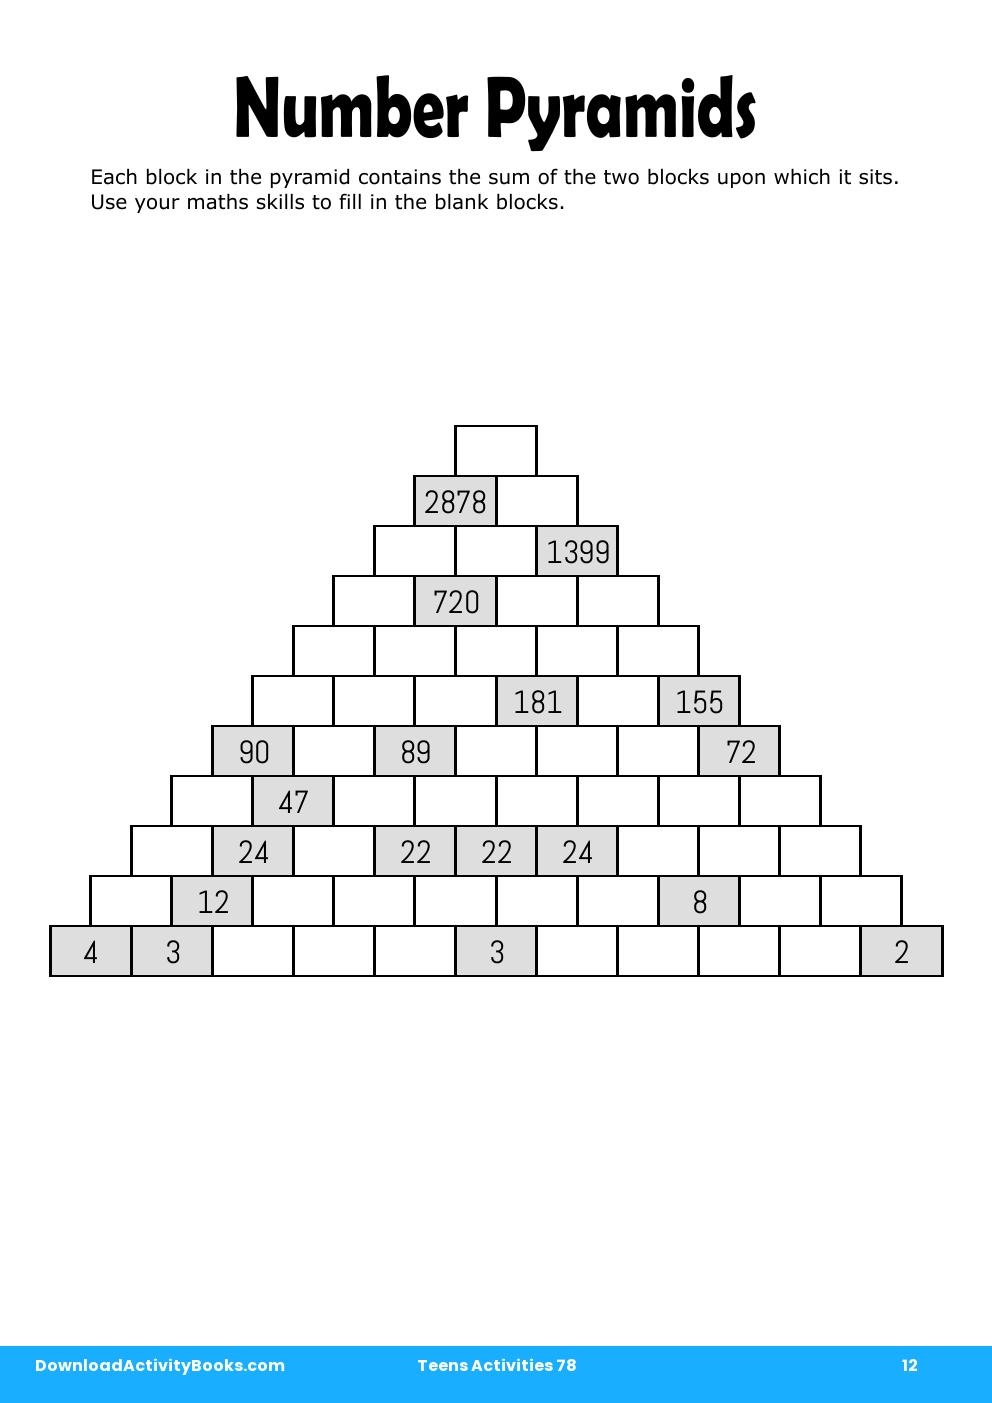 Number Pyramids in Teens Activities 78